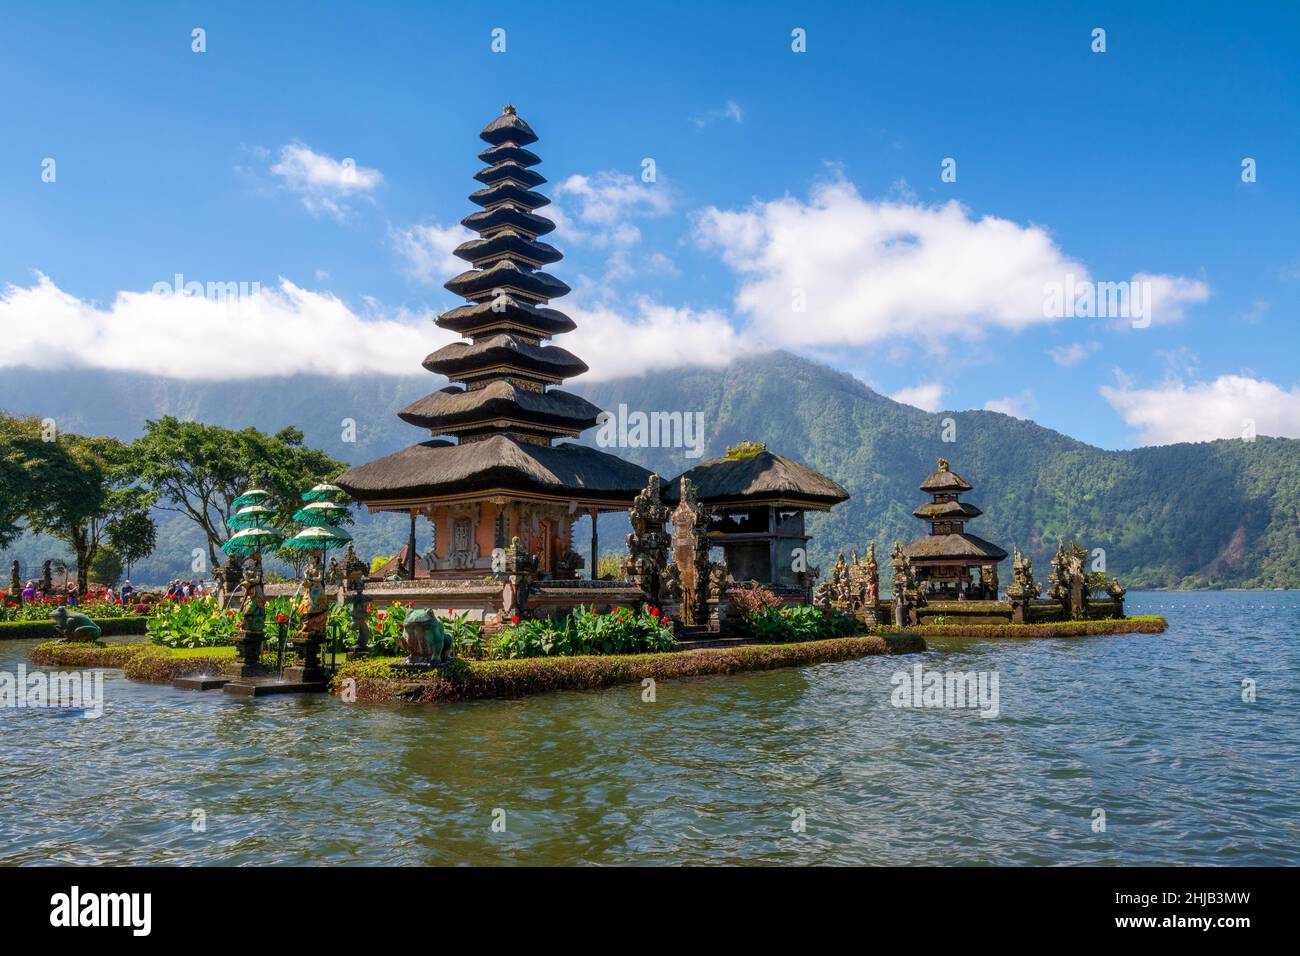 Der Bali Wassertempel am Bratan See ist der schönste Tempel in Bali, Indonesien. Der Pura Ulun Danu Beratan Tempel liegt am See. Stockfoto